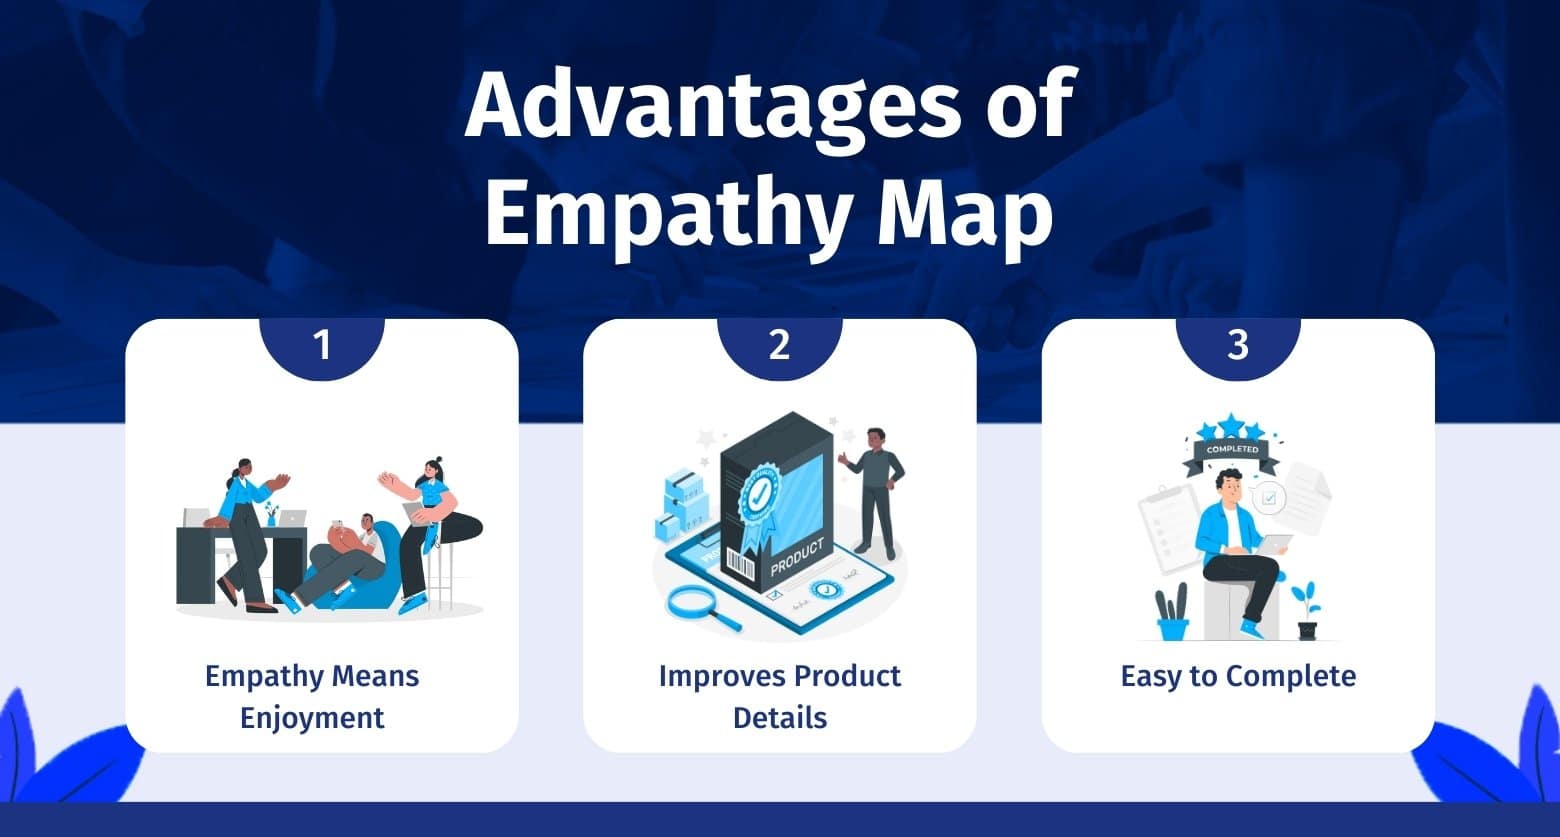 empathy-map-advantages